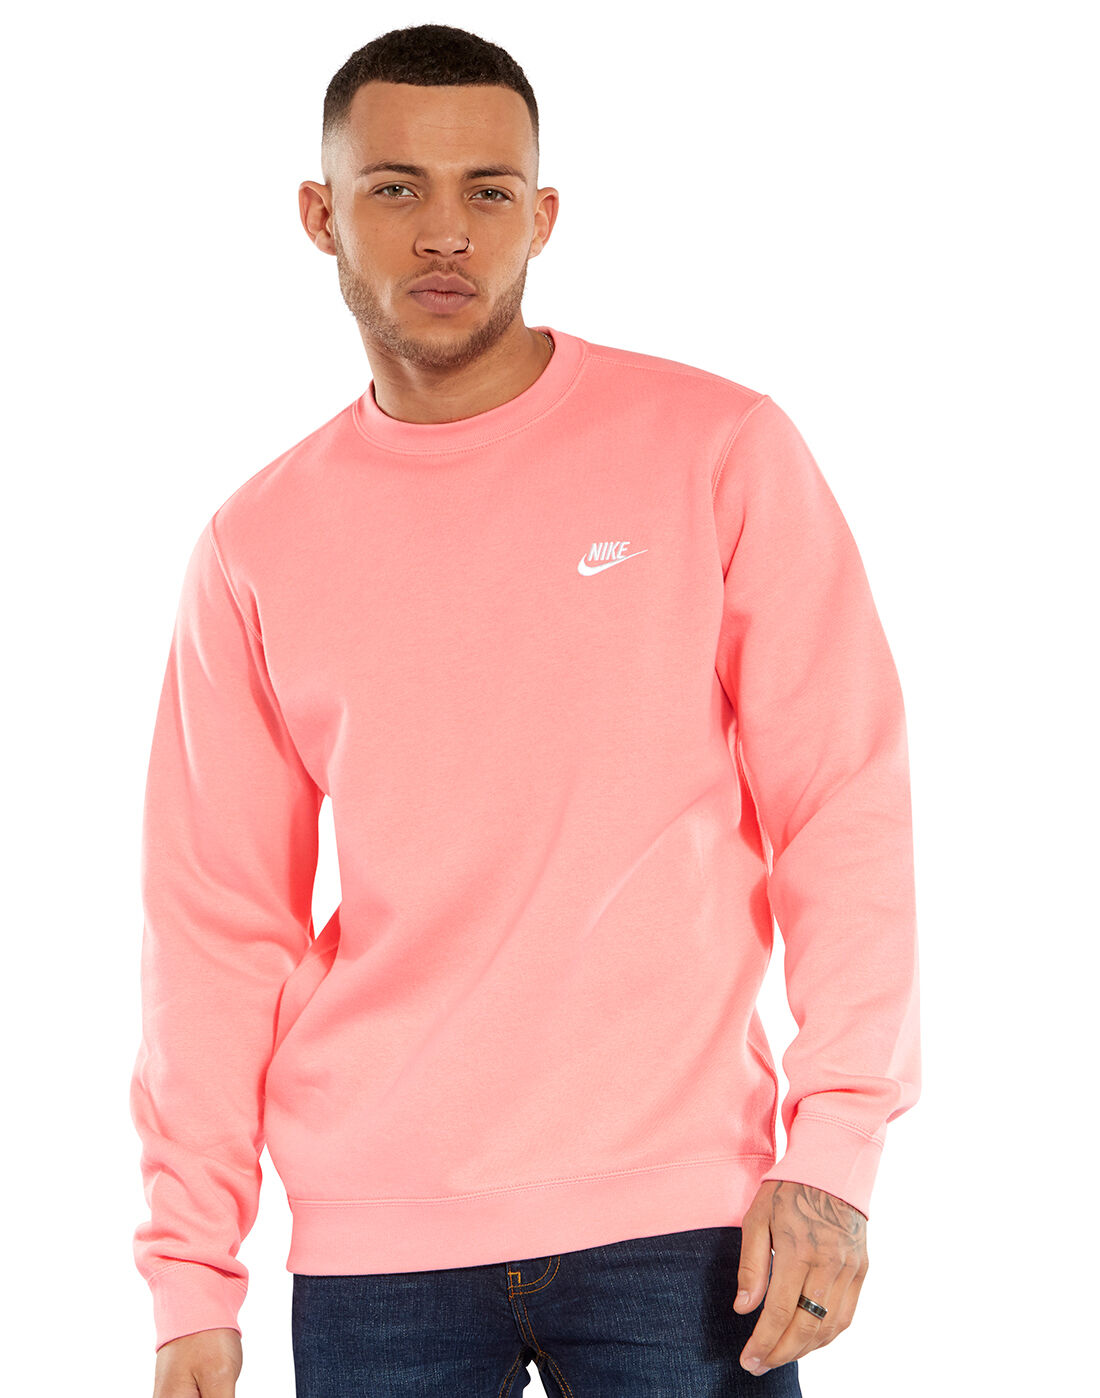 mens pink hoodie nike